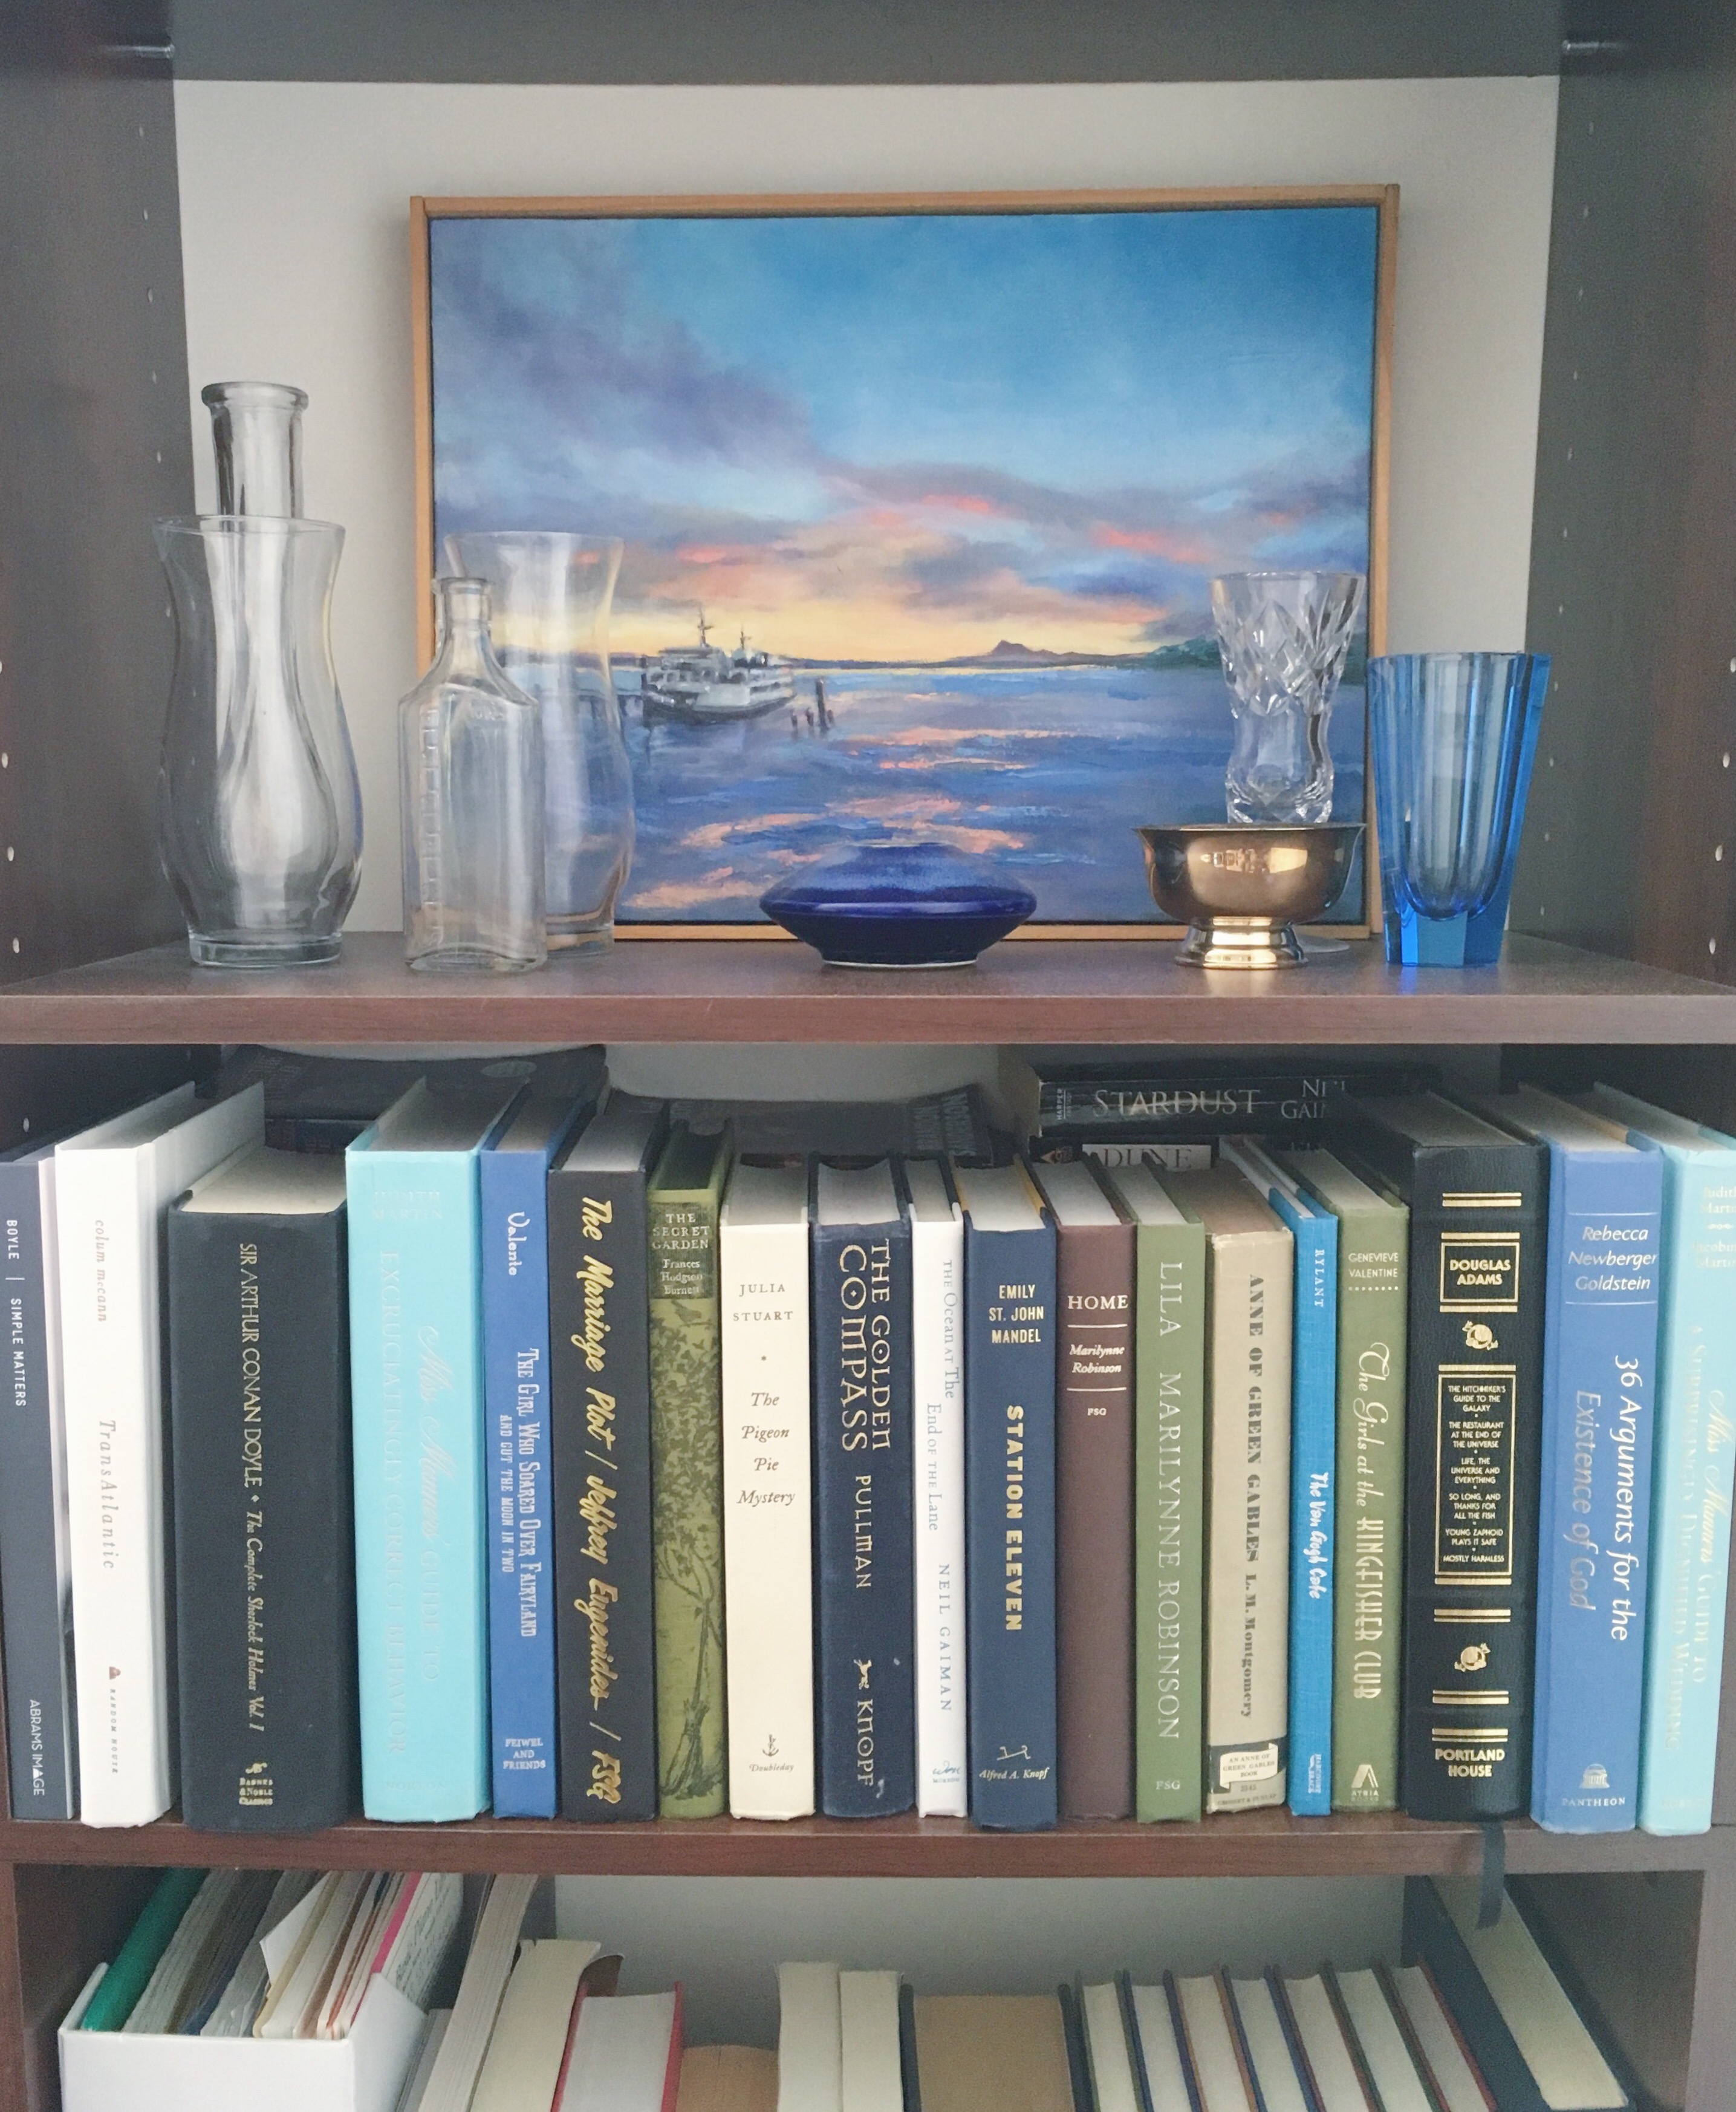 Katharine Schellman - bookshelf display - motivation